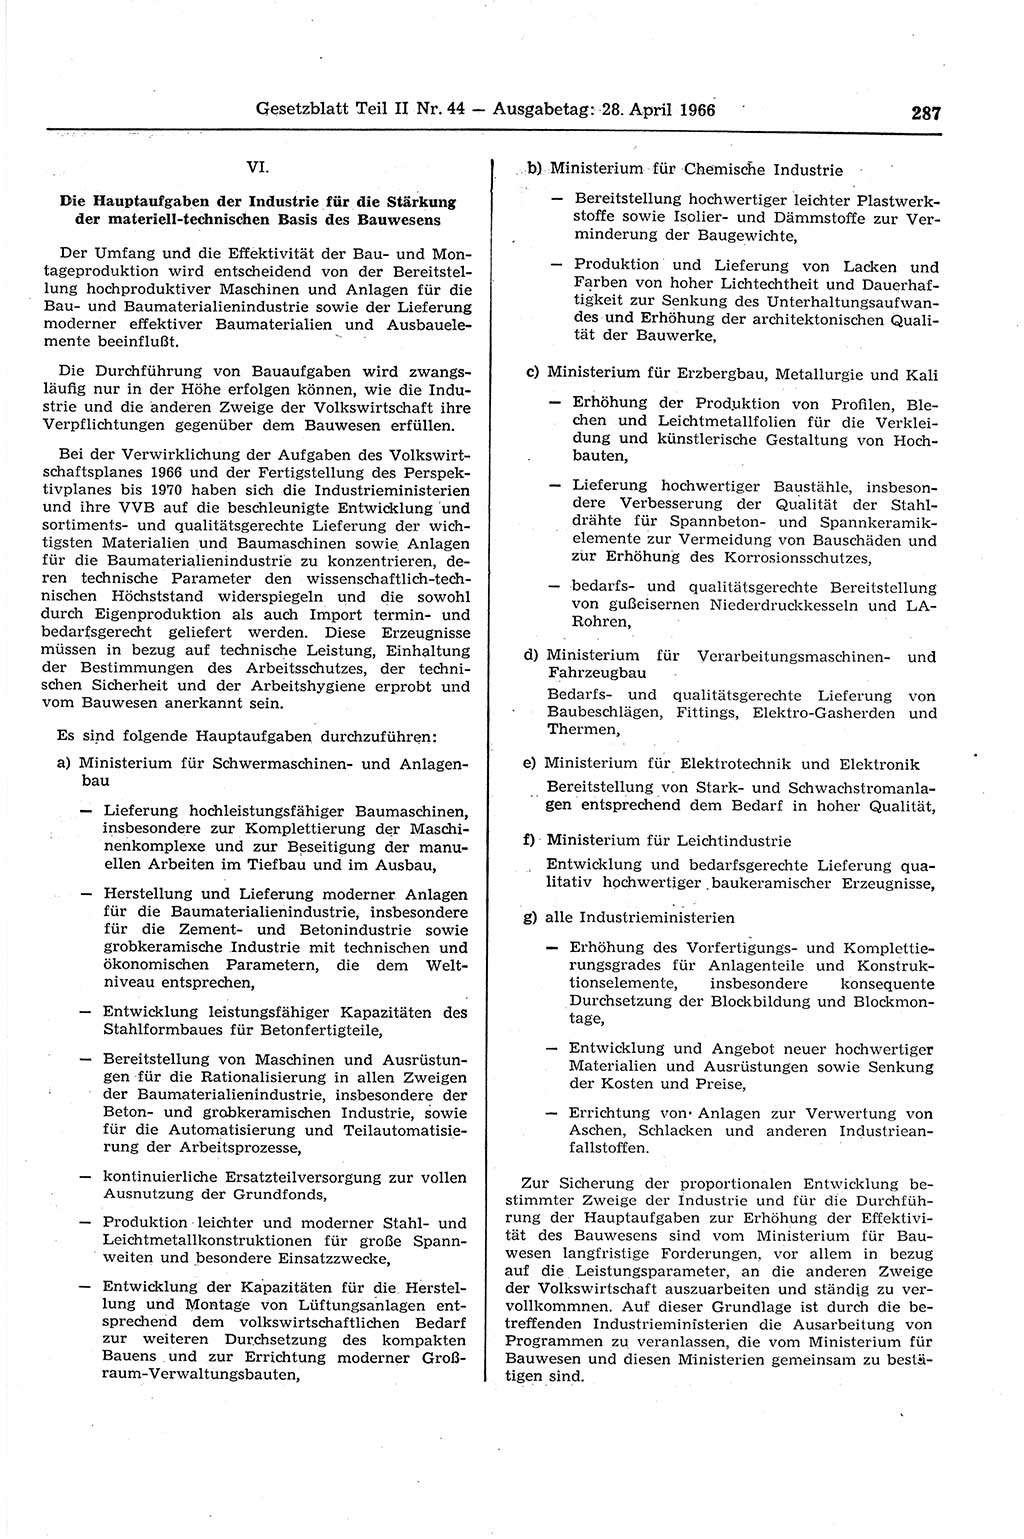 Gesetzblatt (GBl.) der Deutschen Demokratischen Republik (DDR) Teil ⅠⅠ 1966, Seite 287 (GBl. DDR ⅠⅠ 1966, S. 287)